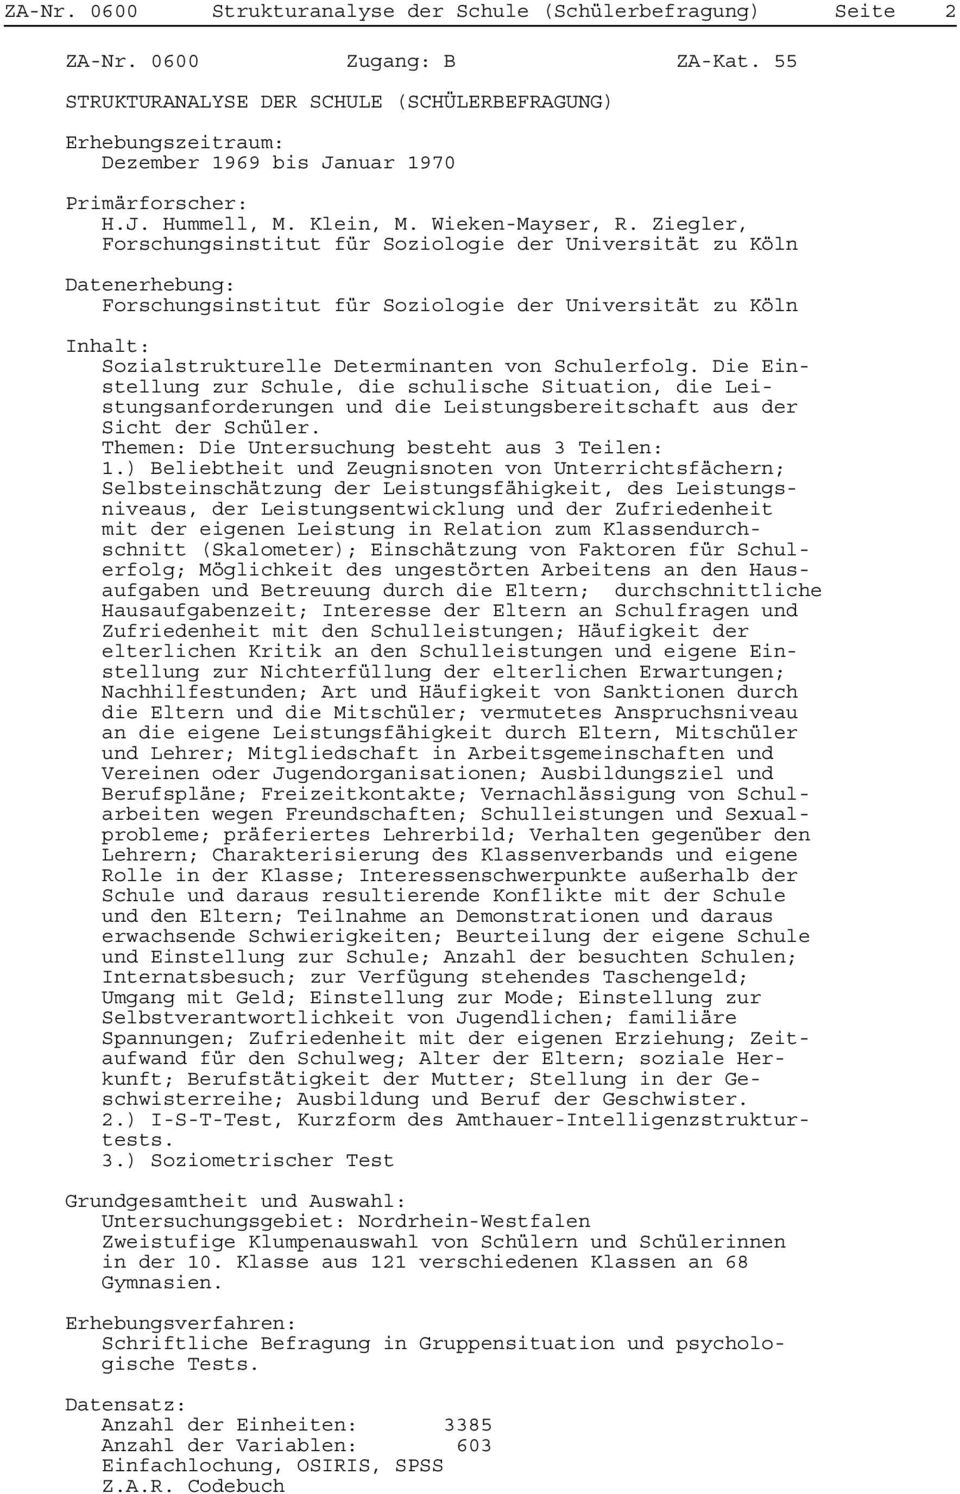 Ziegler, Forschungsinstitut für Soziologie der Universität zu Köln Datenerhebung: Forschungsinstitut für Soziologie der Universität zu Köln Inhalt: Sozialstrukturelle Determinanten von Schulerfolg.